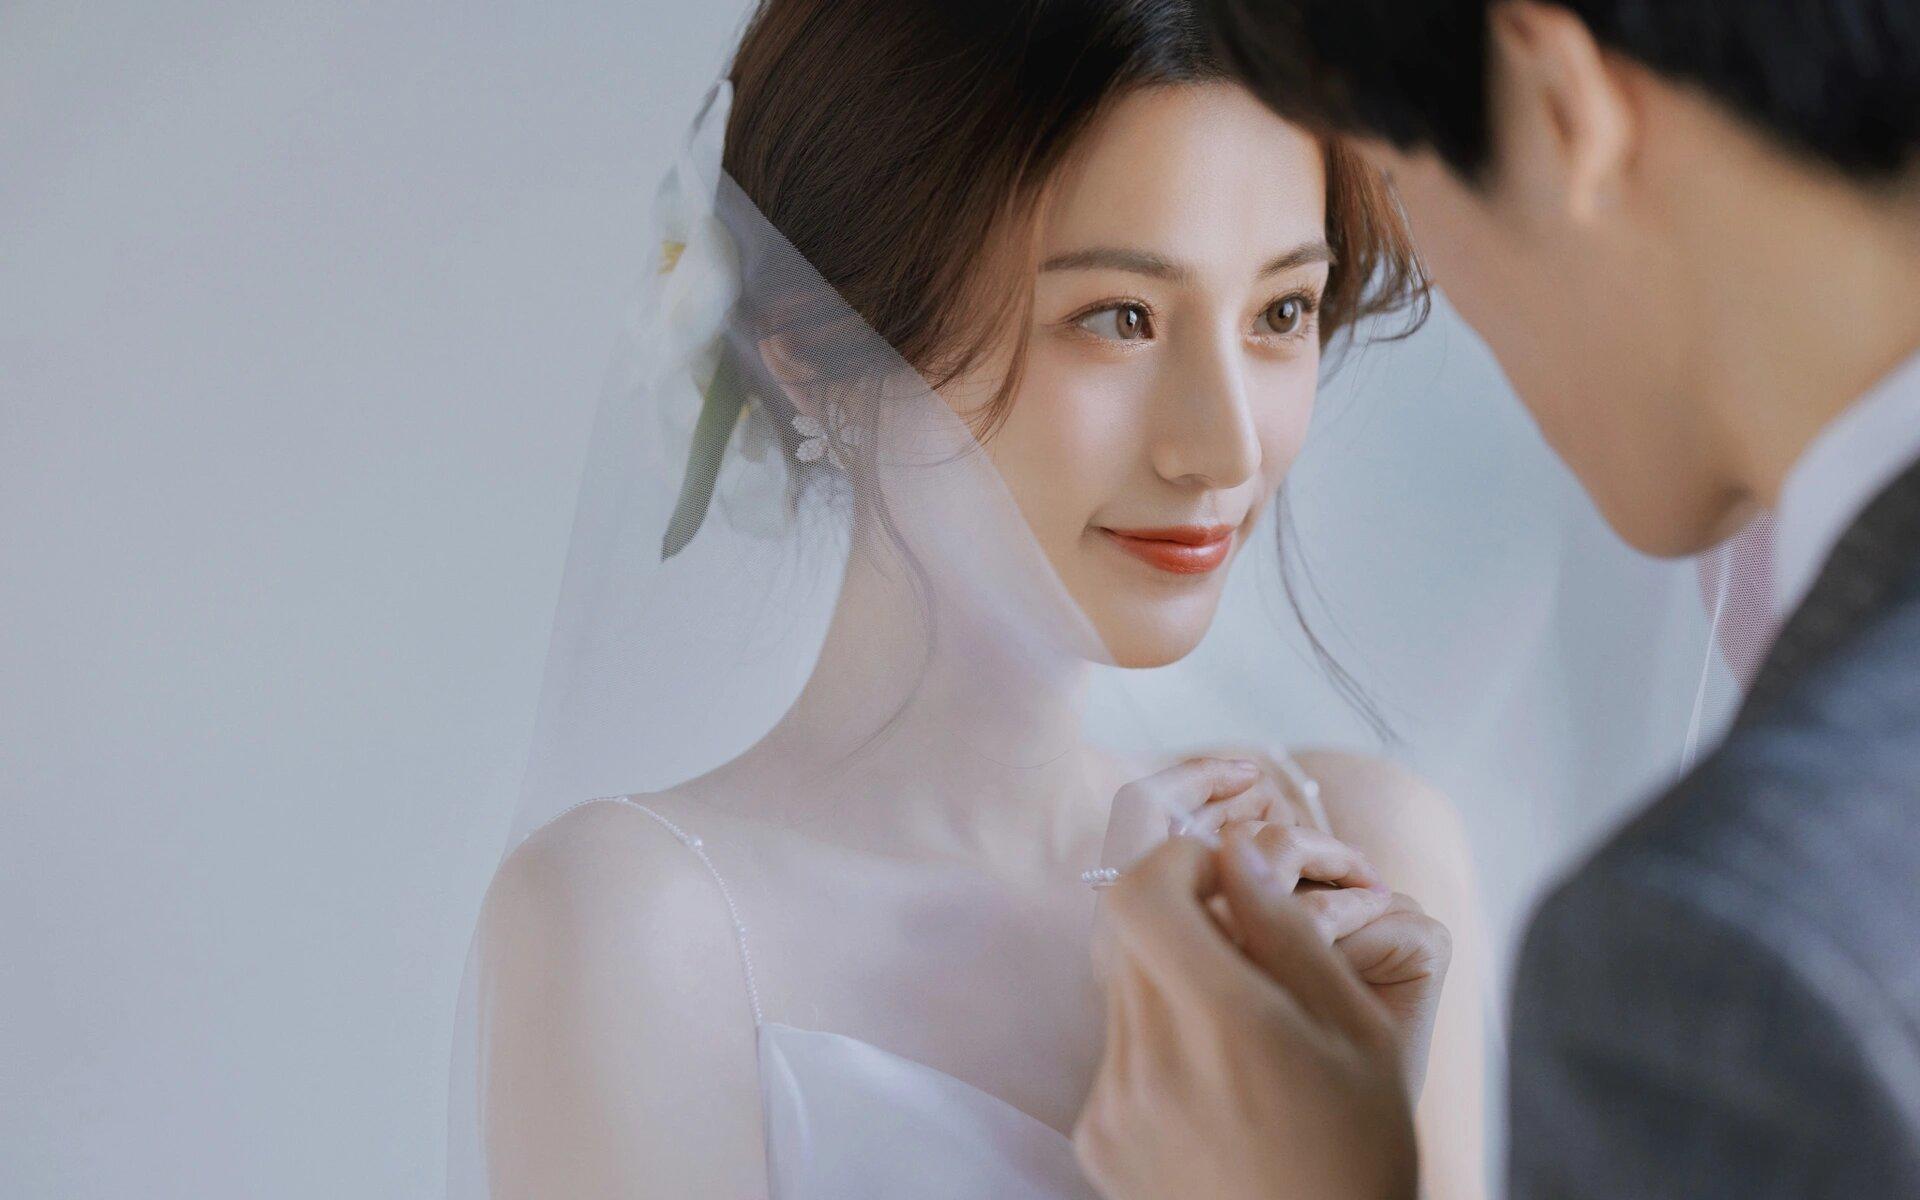 甜蜜高级的韩式婚纱照💗简简单单就很浪漫